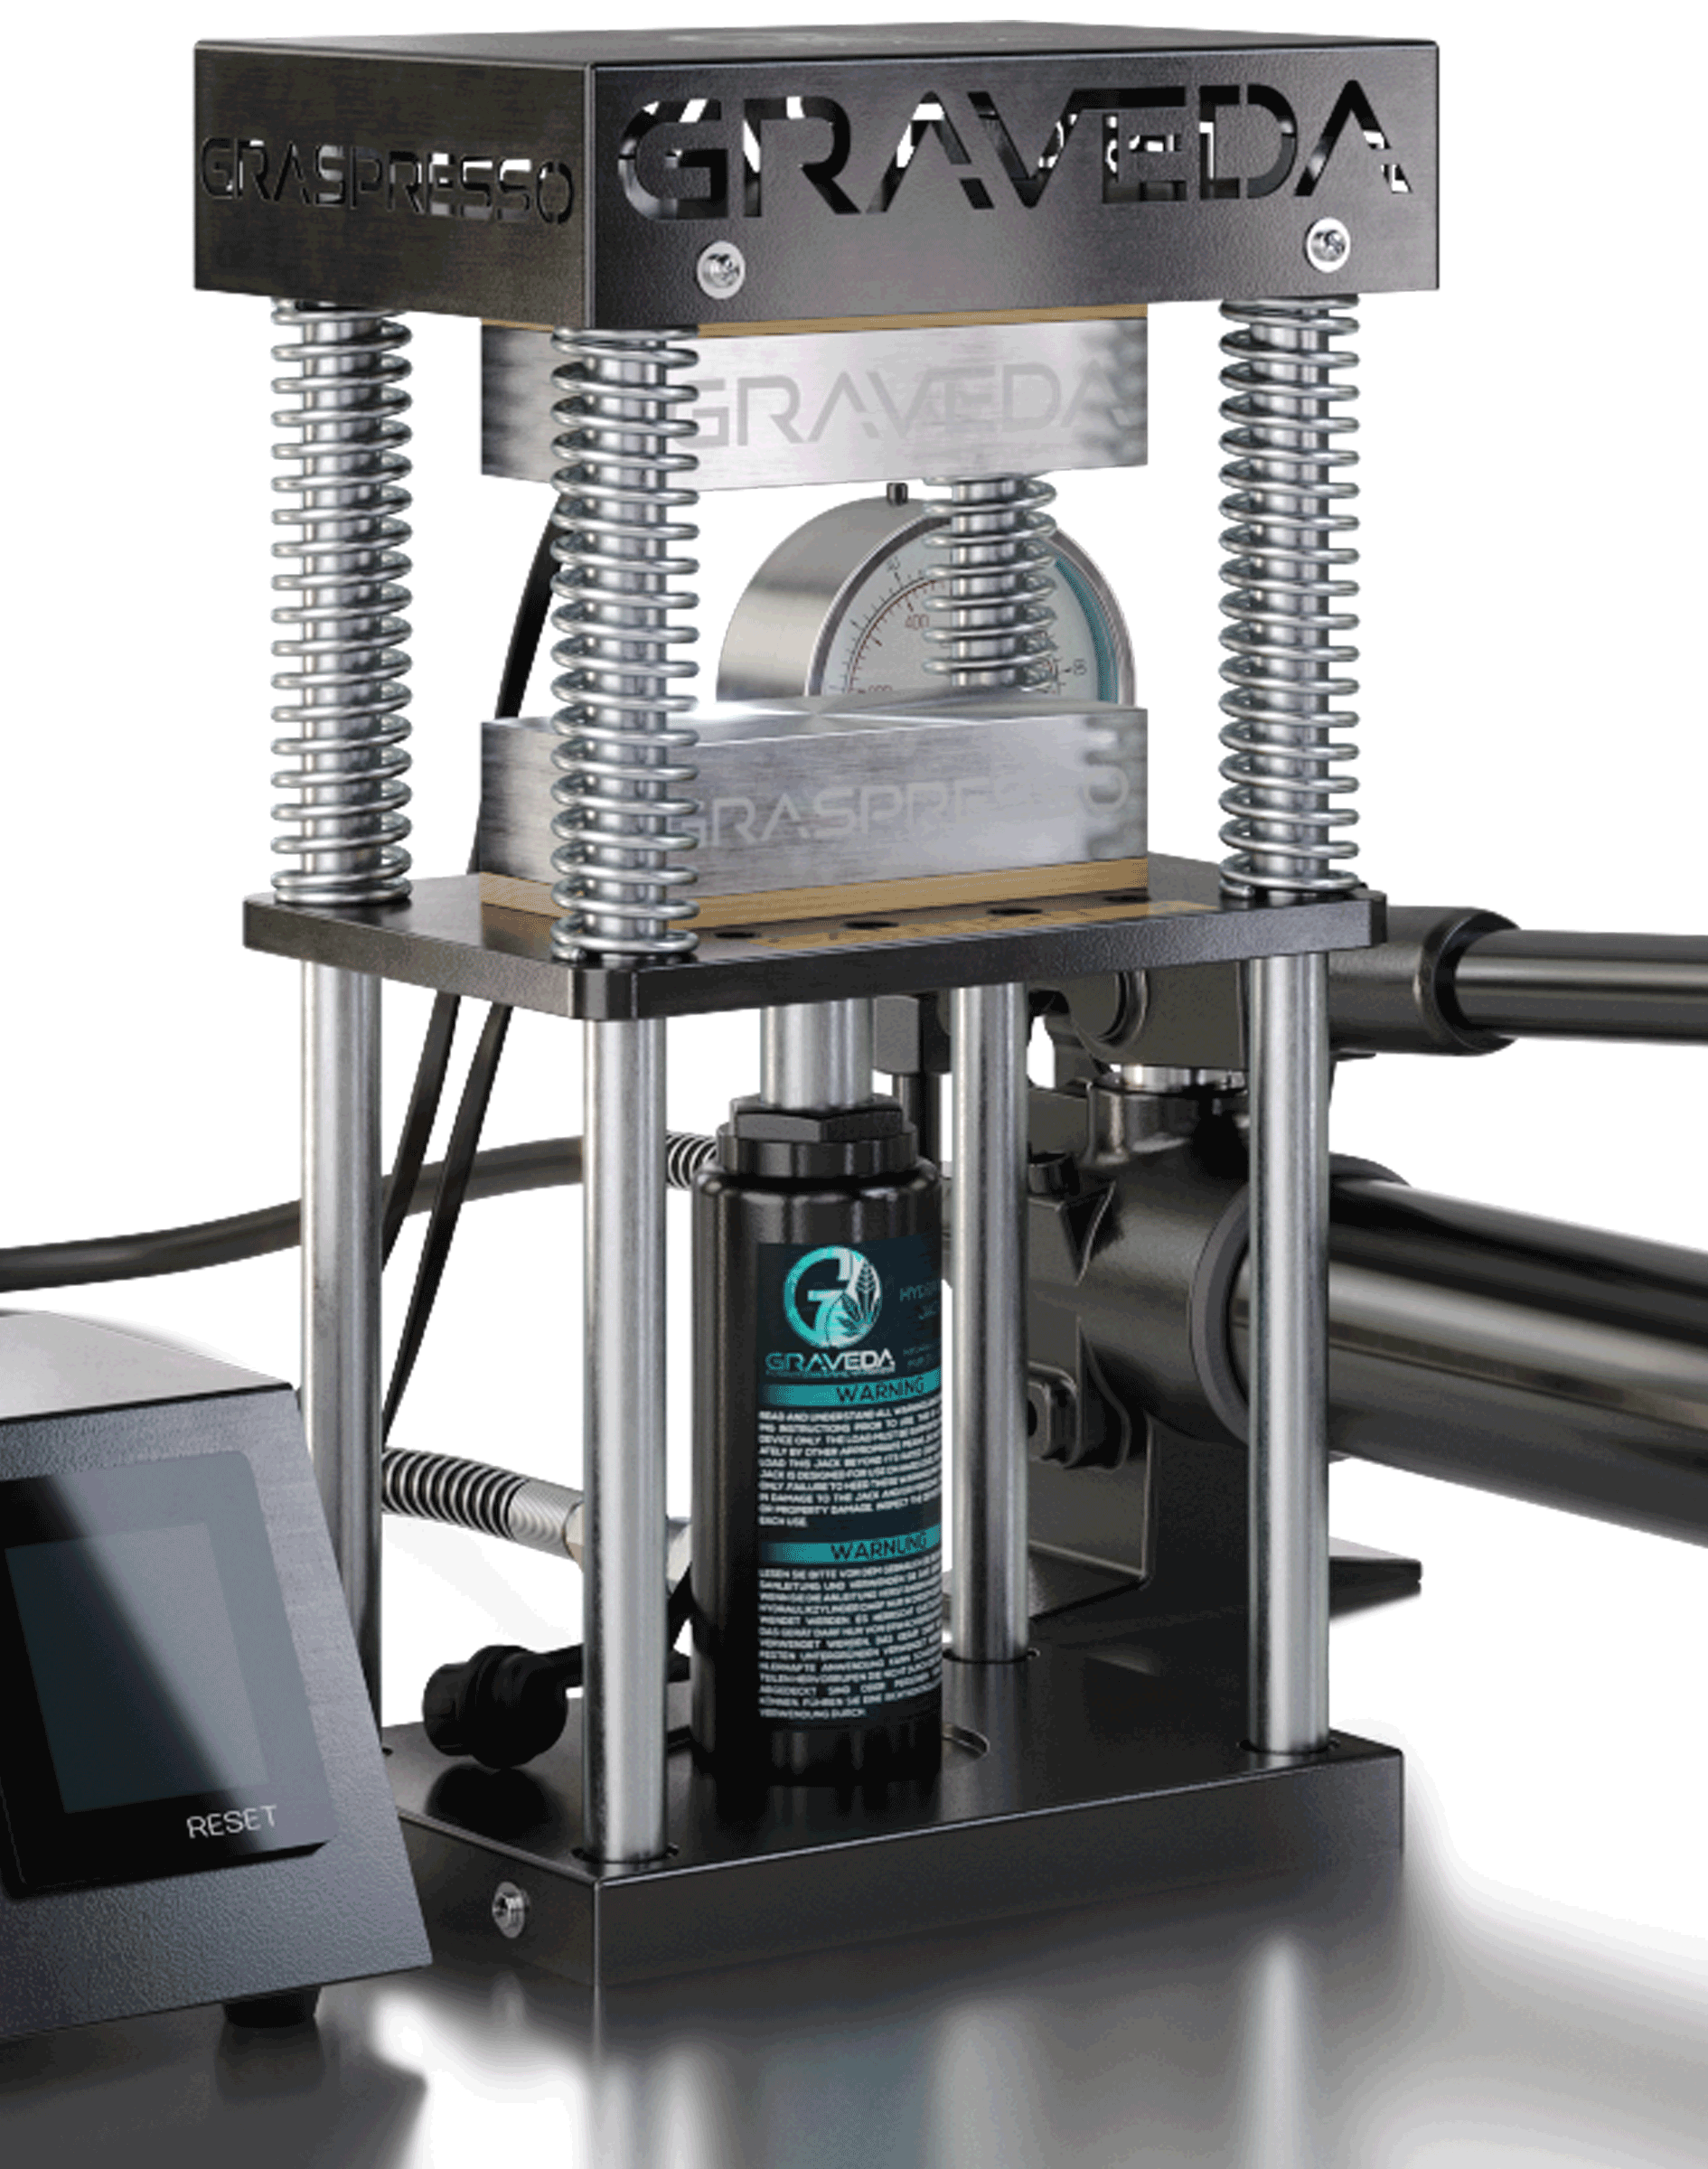 Graveda Refurbished Graspresso - 15T Rosin Press mit 15 Tonnen Hydraulik Zylinder und Druckanzeige, 12 x 6 cm Platten